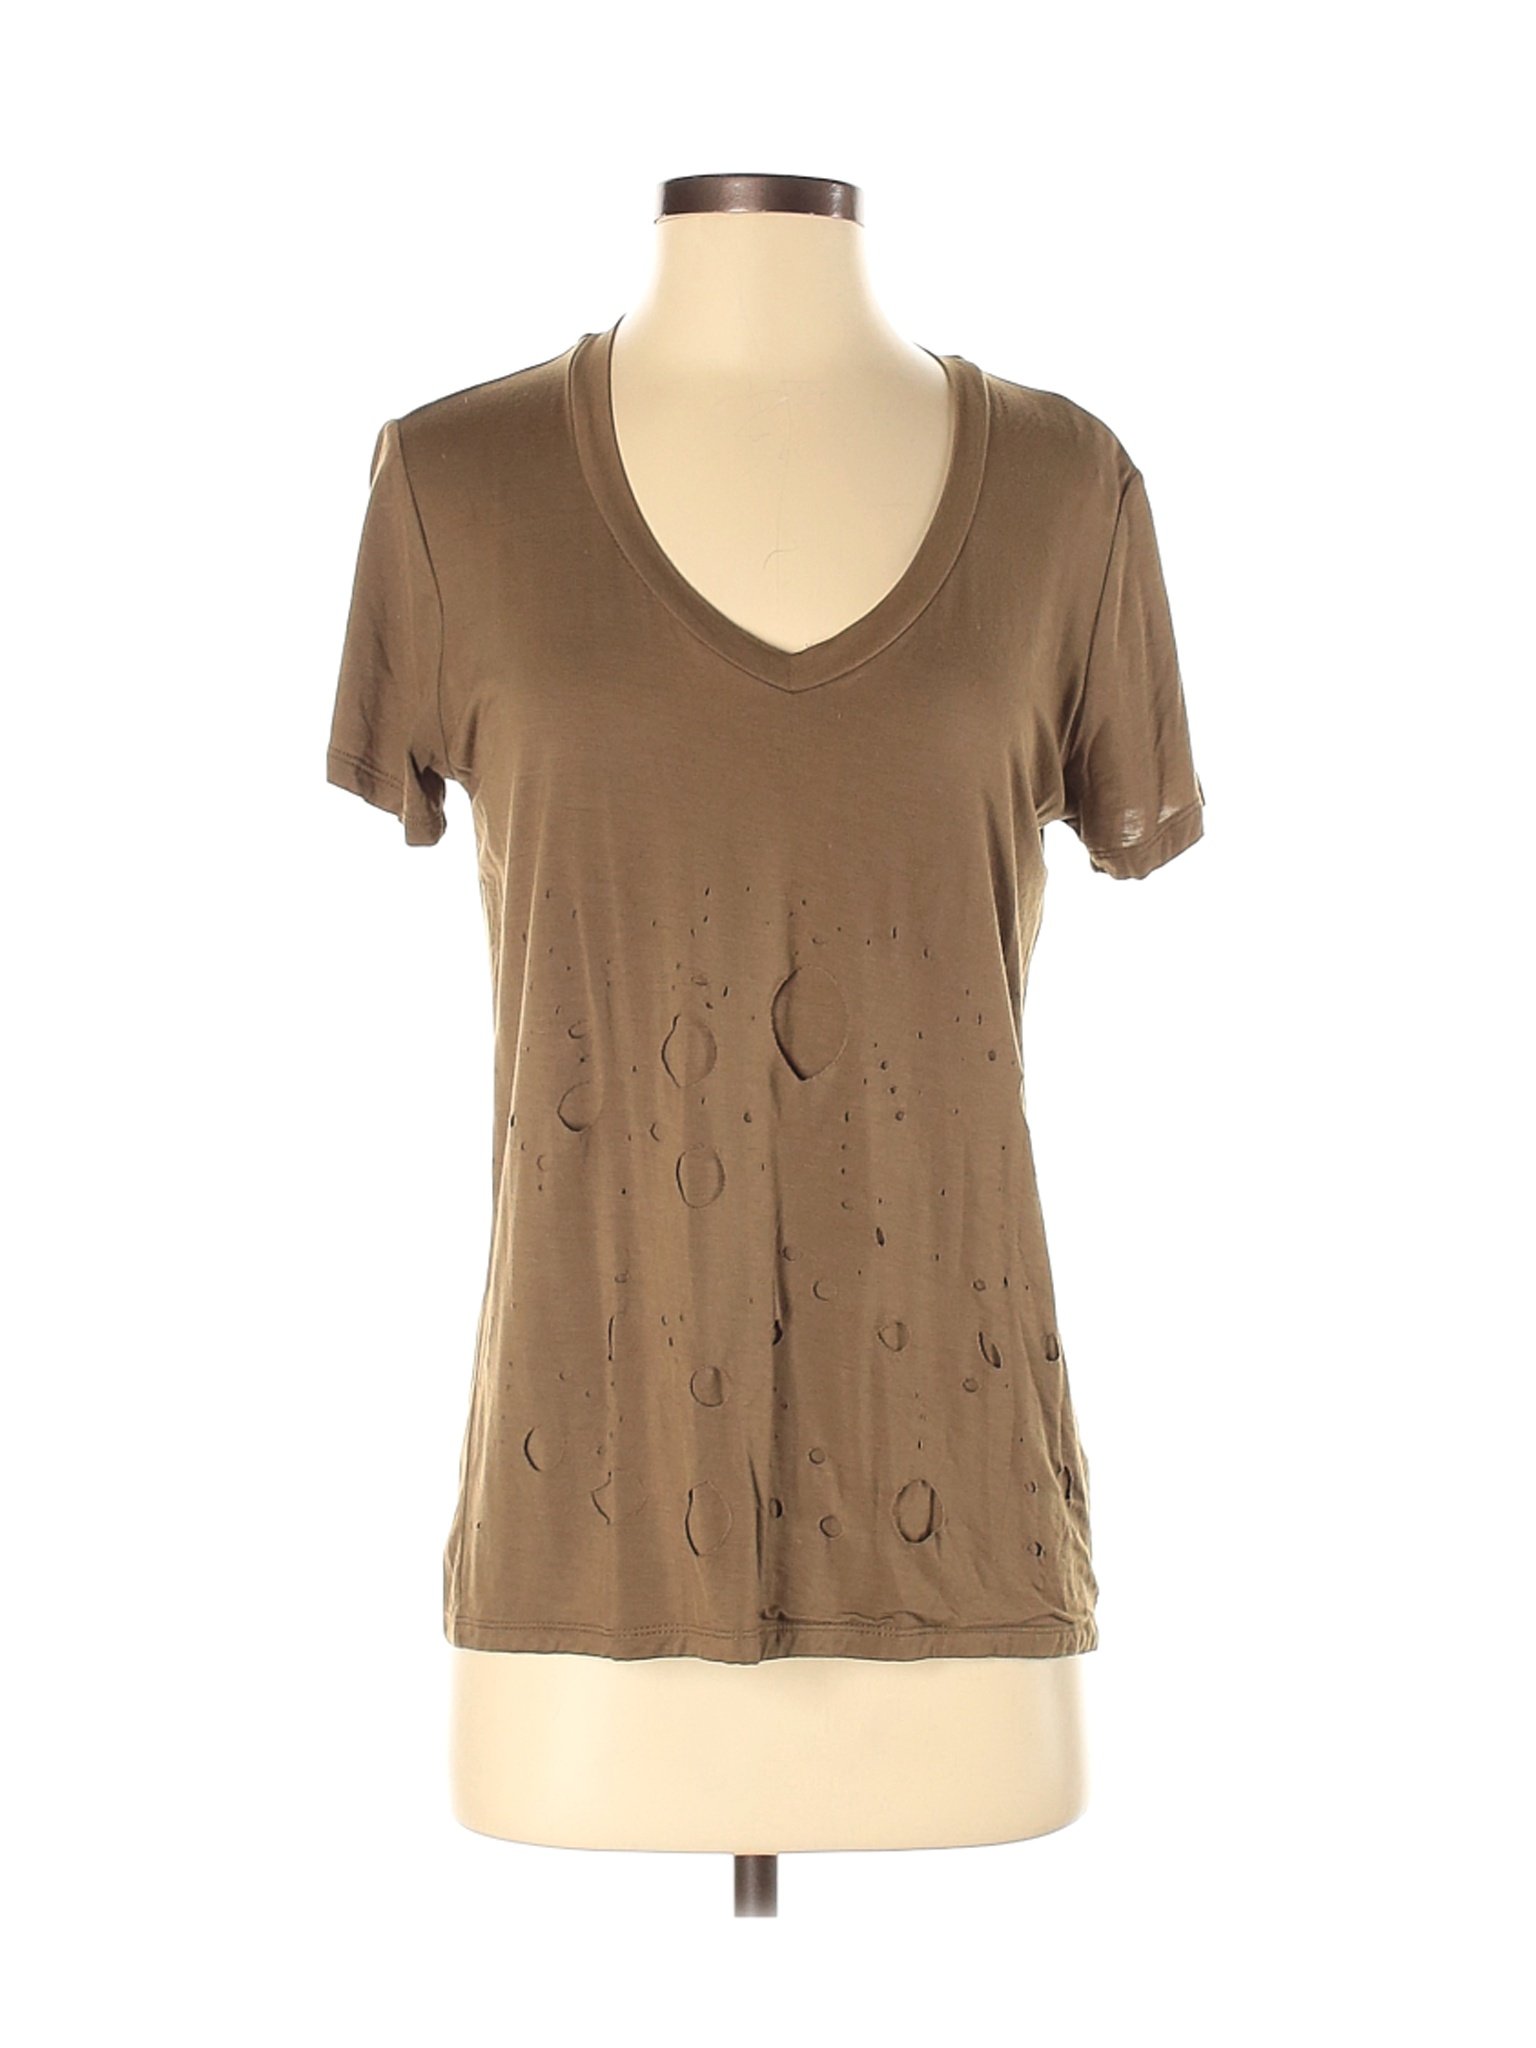 LUXE Women Brown Short Sleeve T-Shirt S | eBay